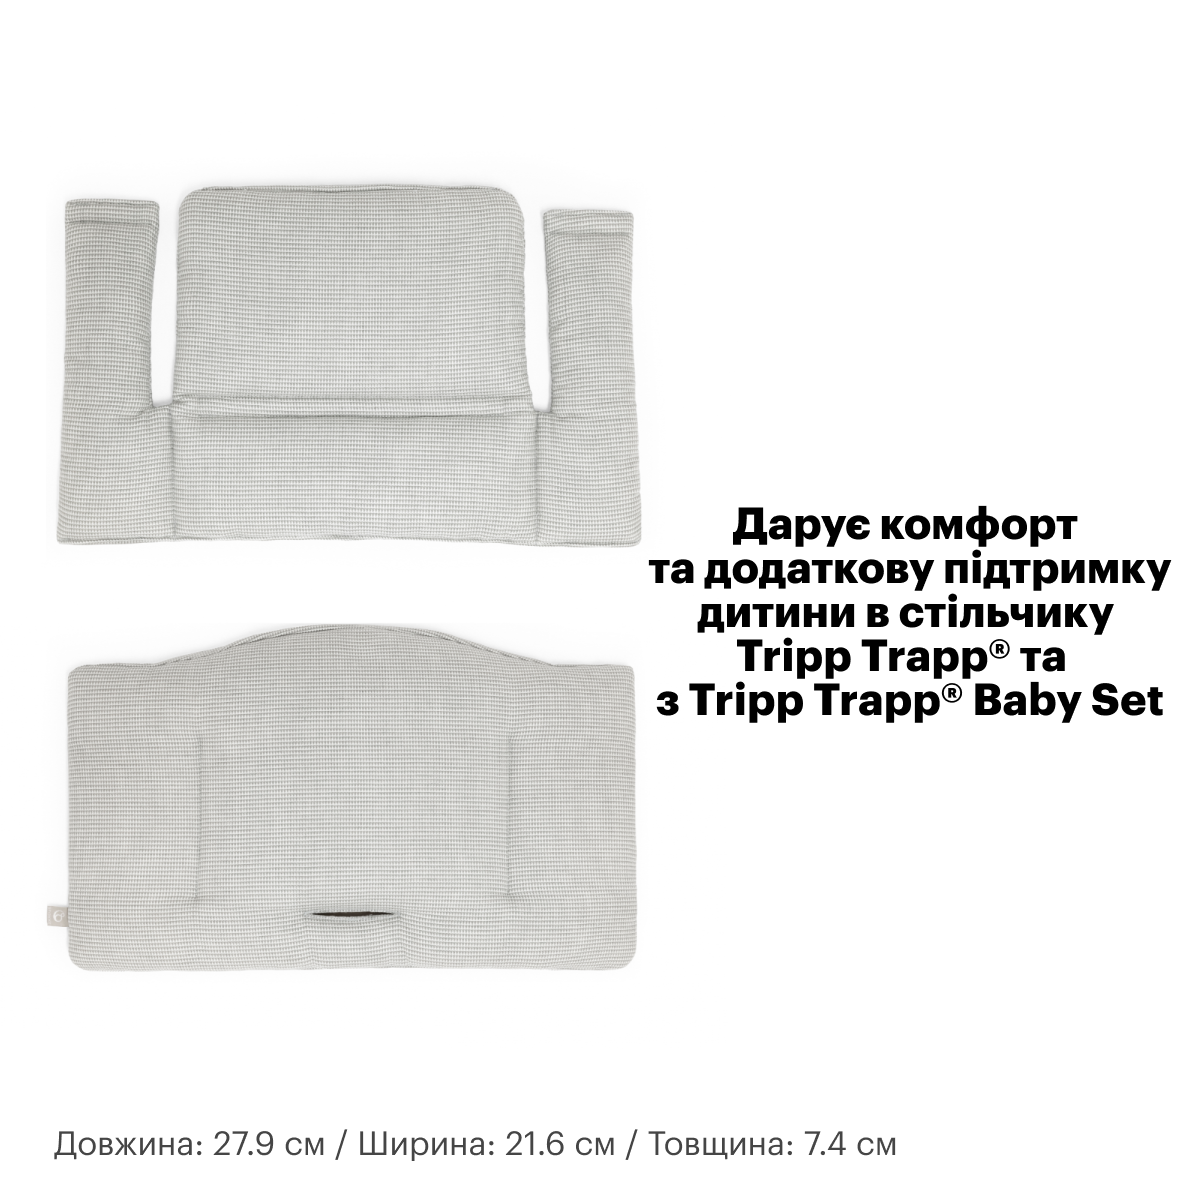 Текстиль для стульчика Stokke Tripp Trapp Nordic grey (100366) - фото 5